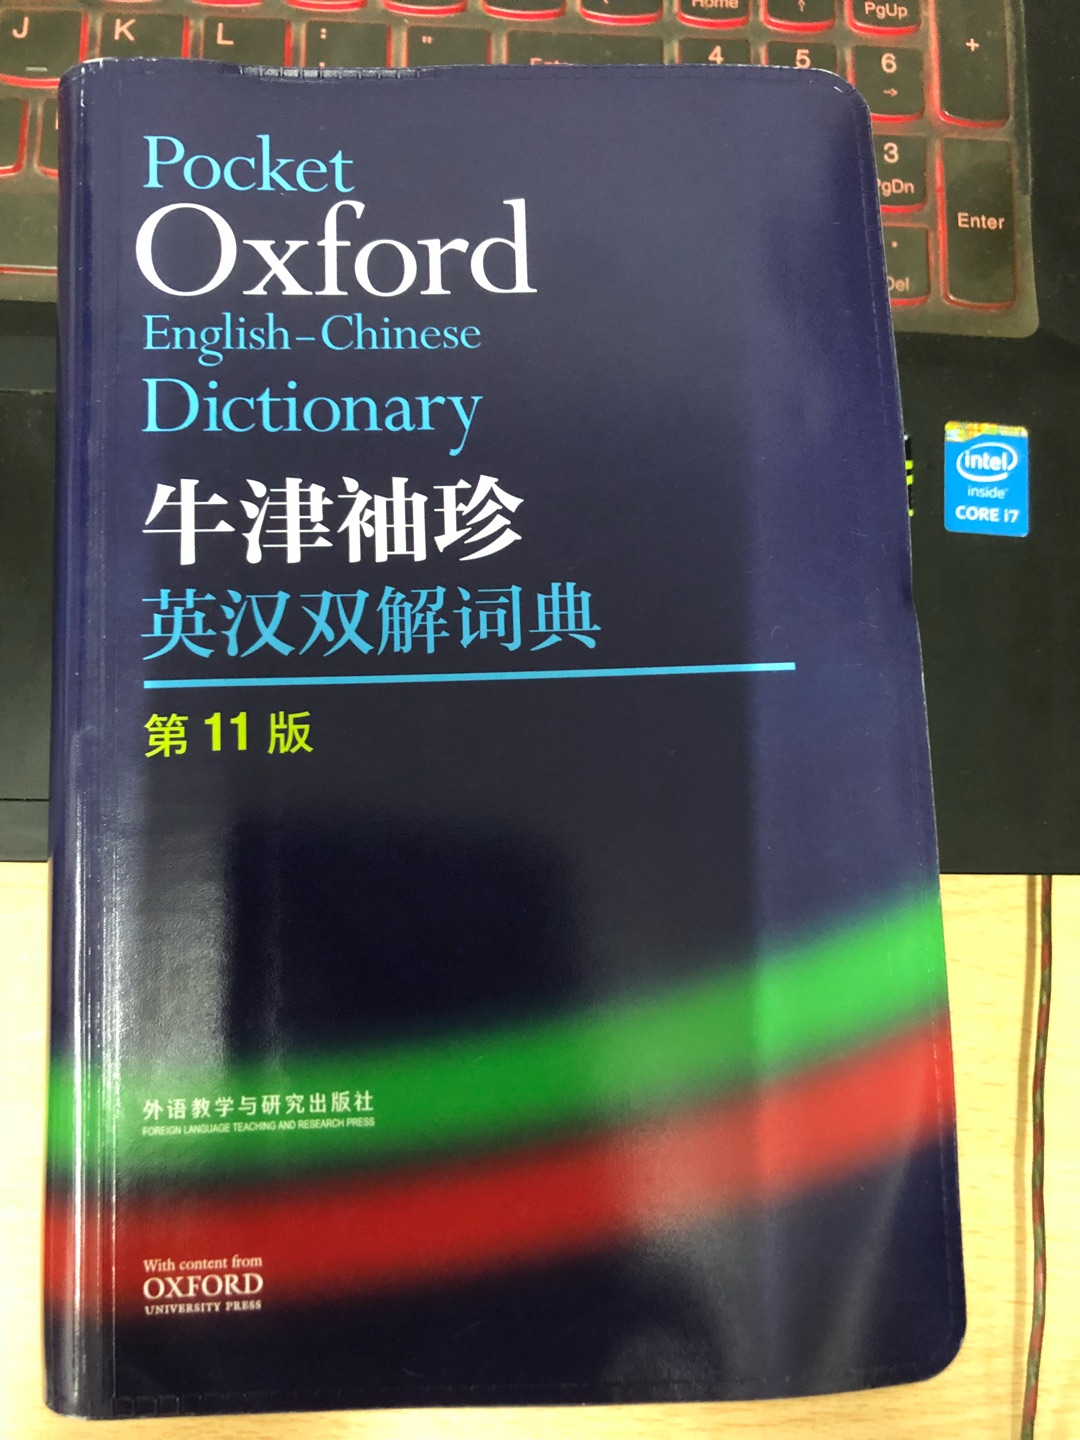 很实用的一本字典，软皮的包装比较简陋，不过书质量没有瑕疵。